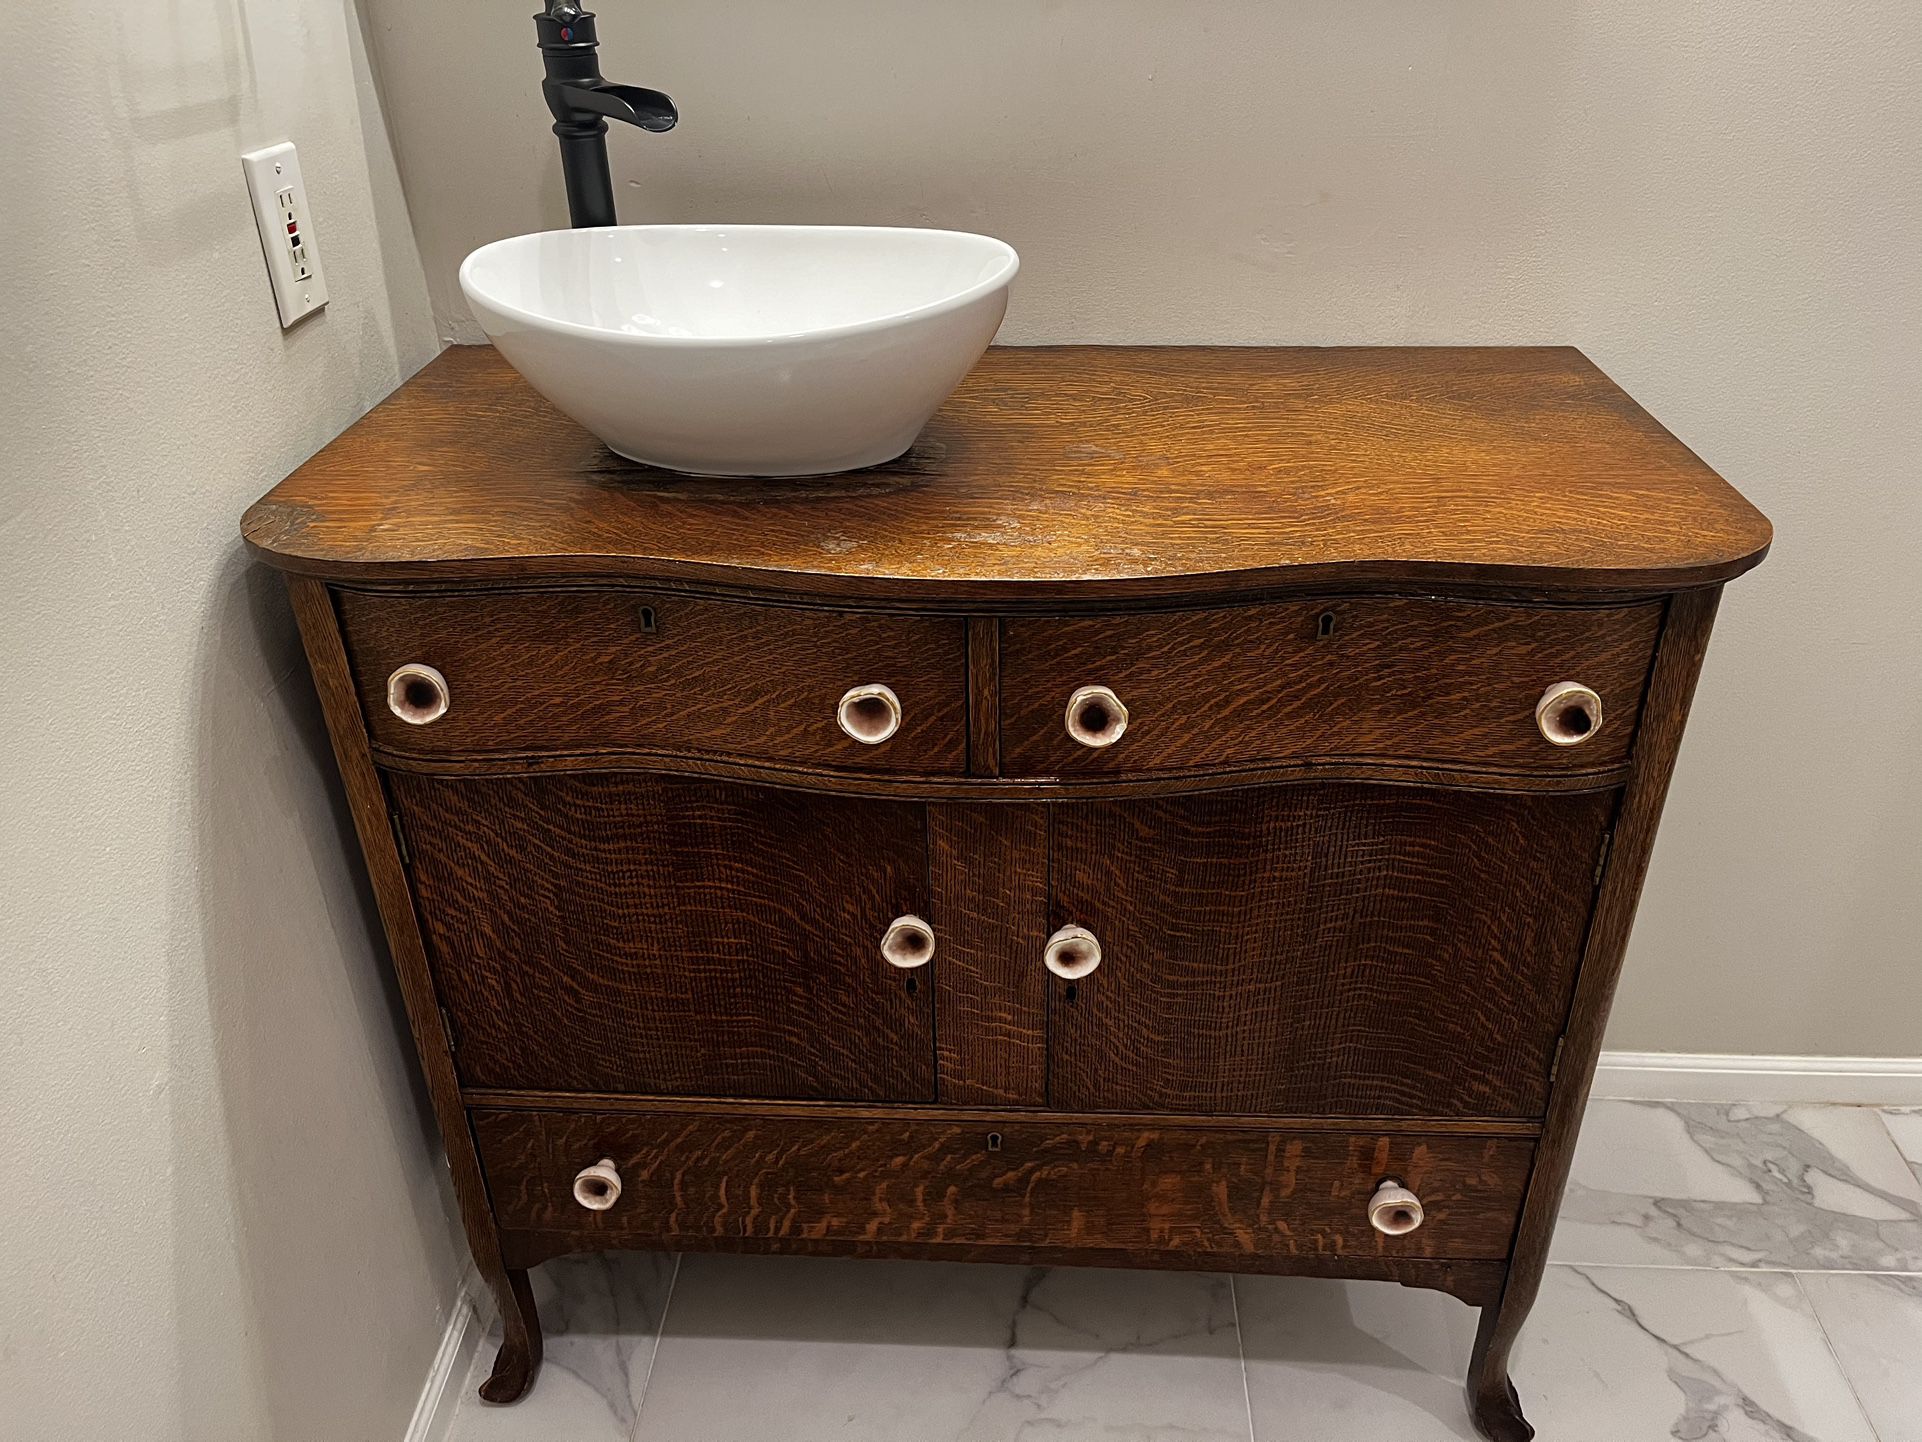 Antique Vanity With Vessel Sink